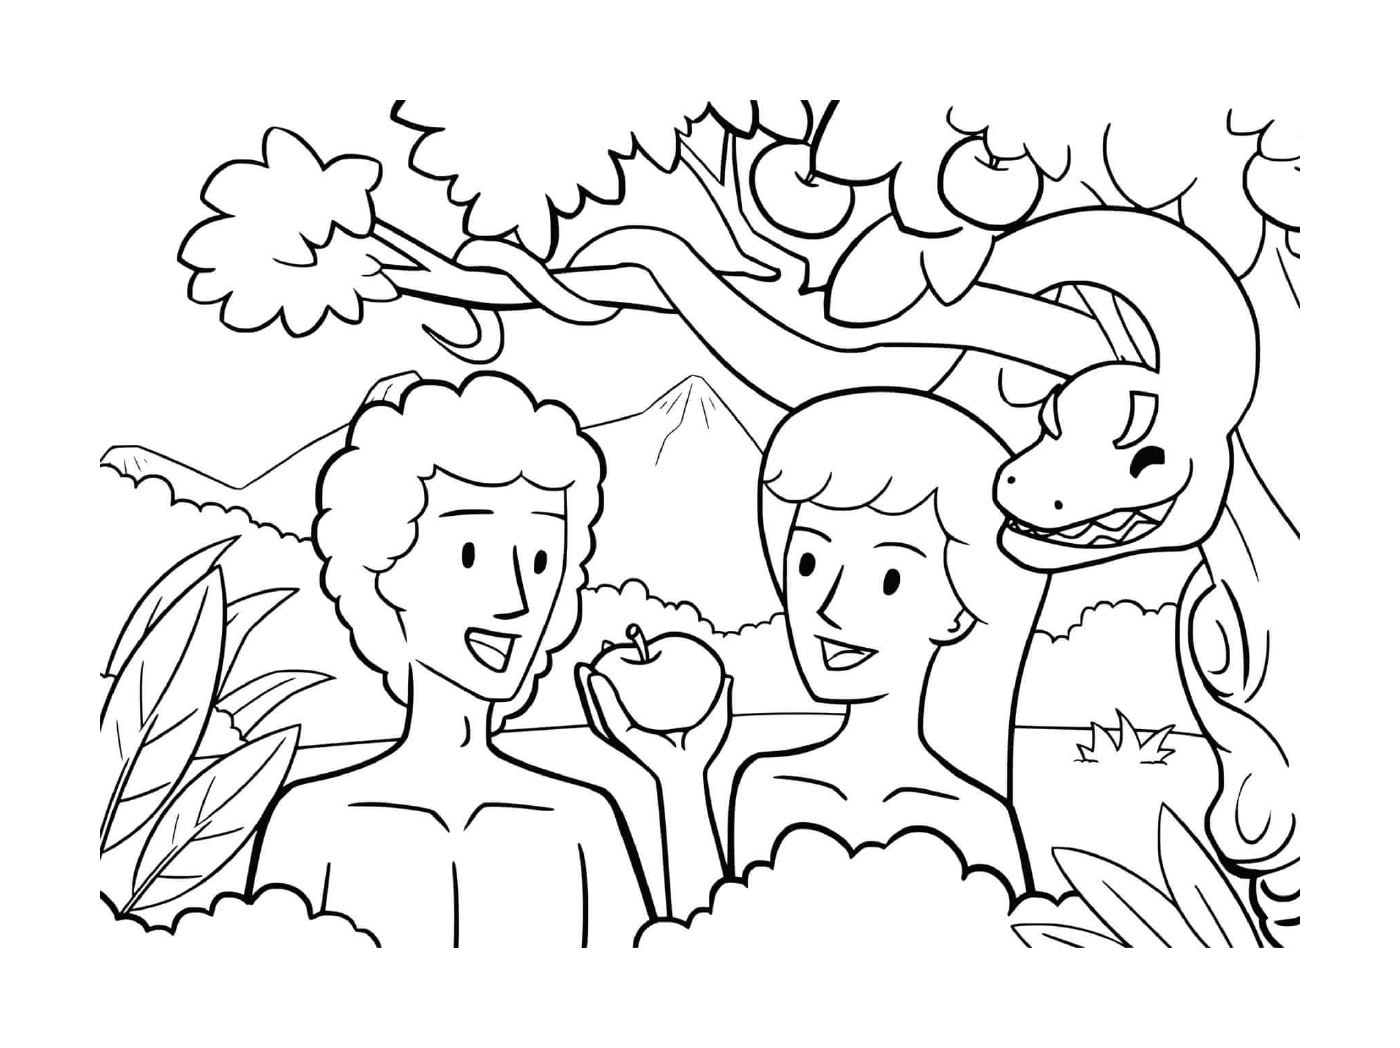  Autunno in giardino, uomo e donna in possesso di una mela 